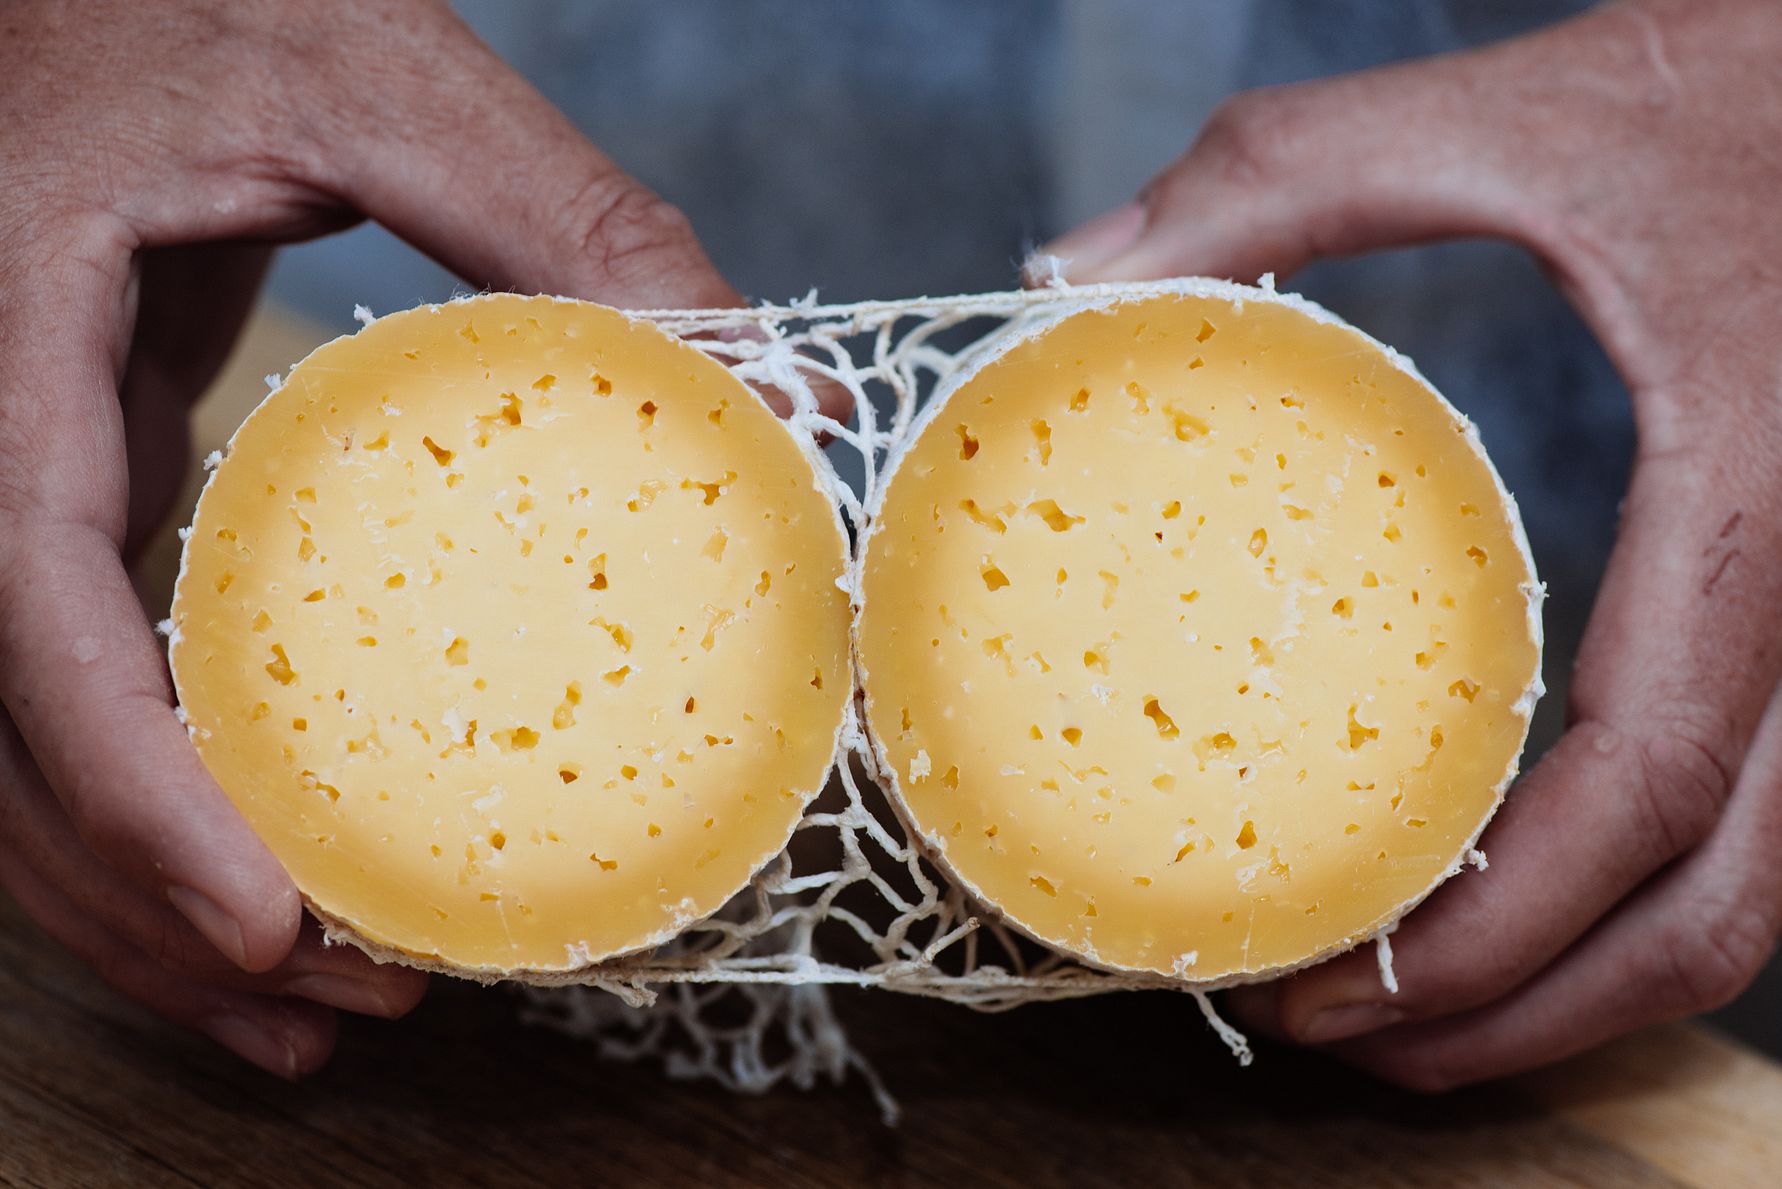 Arla Unika åbner Danmarks første center for osteforædling